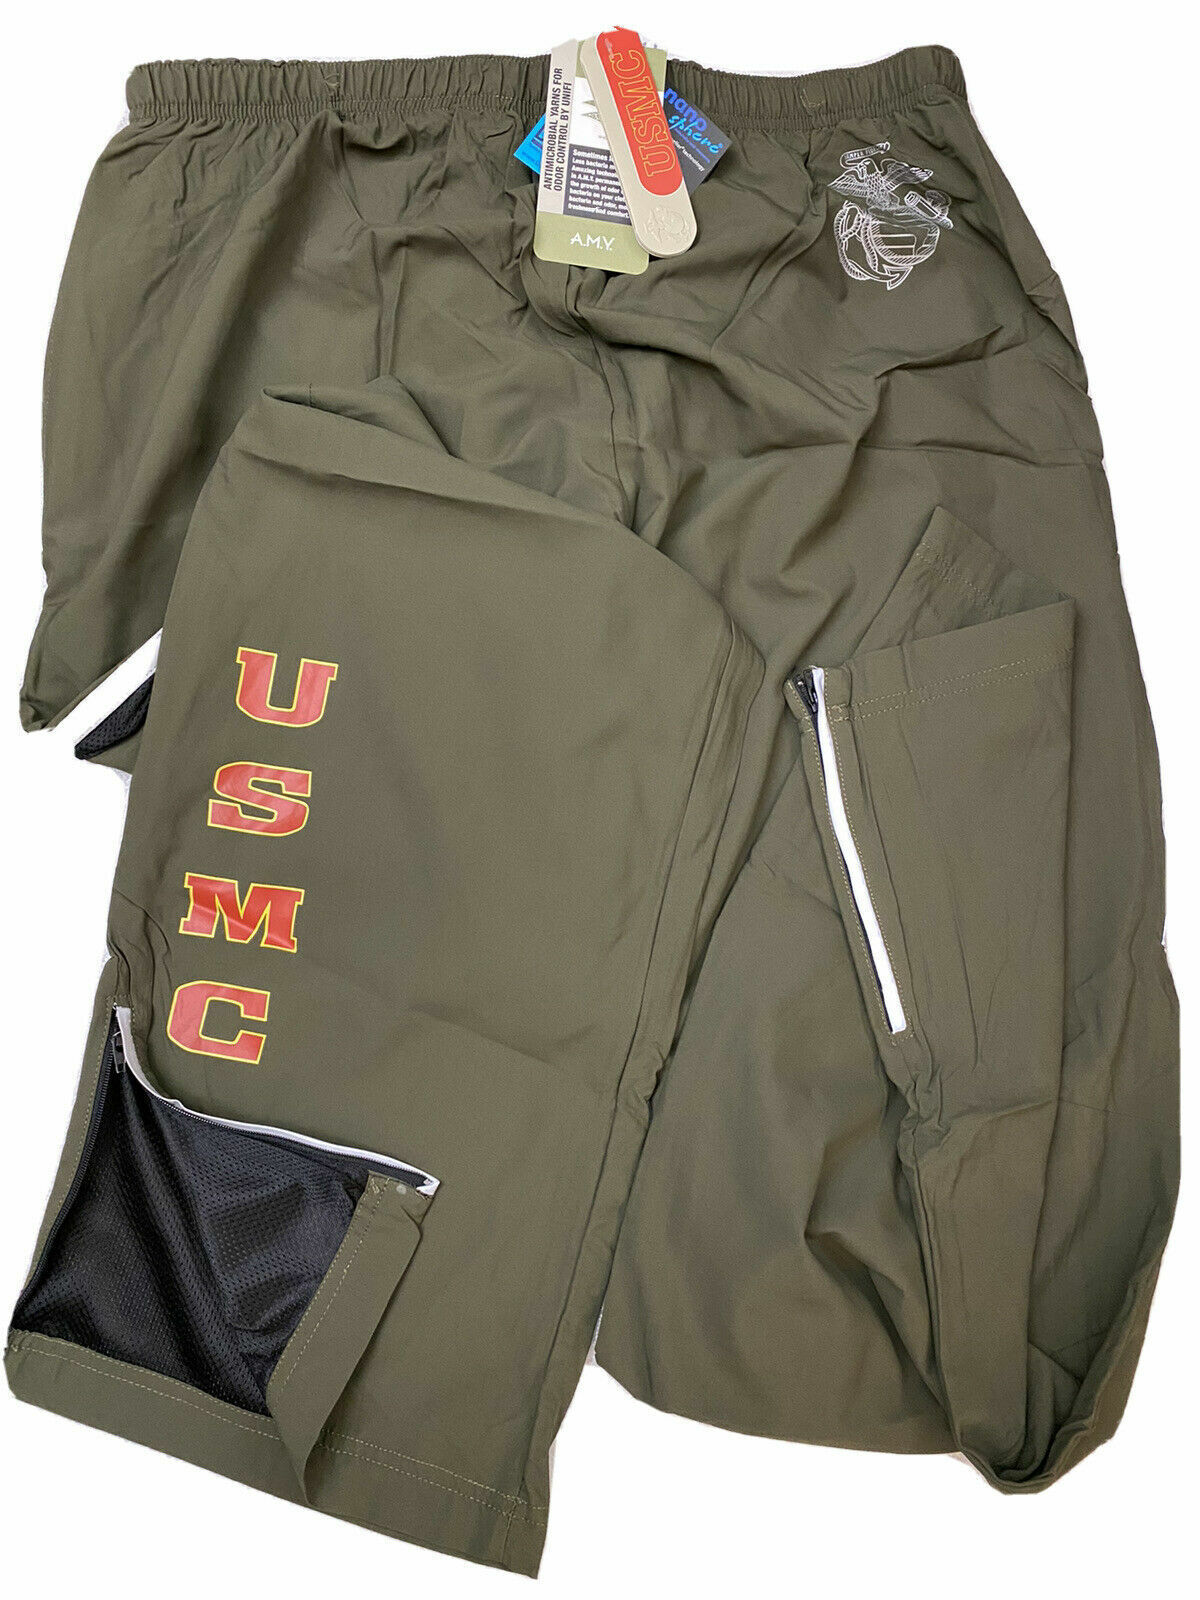 USMC New Balance PT / Athletic Pants U.S. Marines Size X-Large Long - New